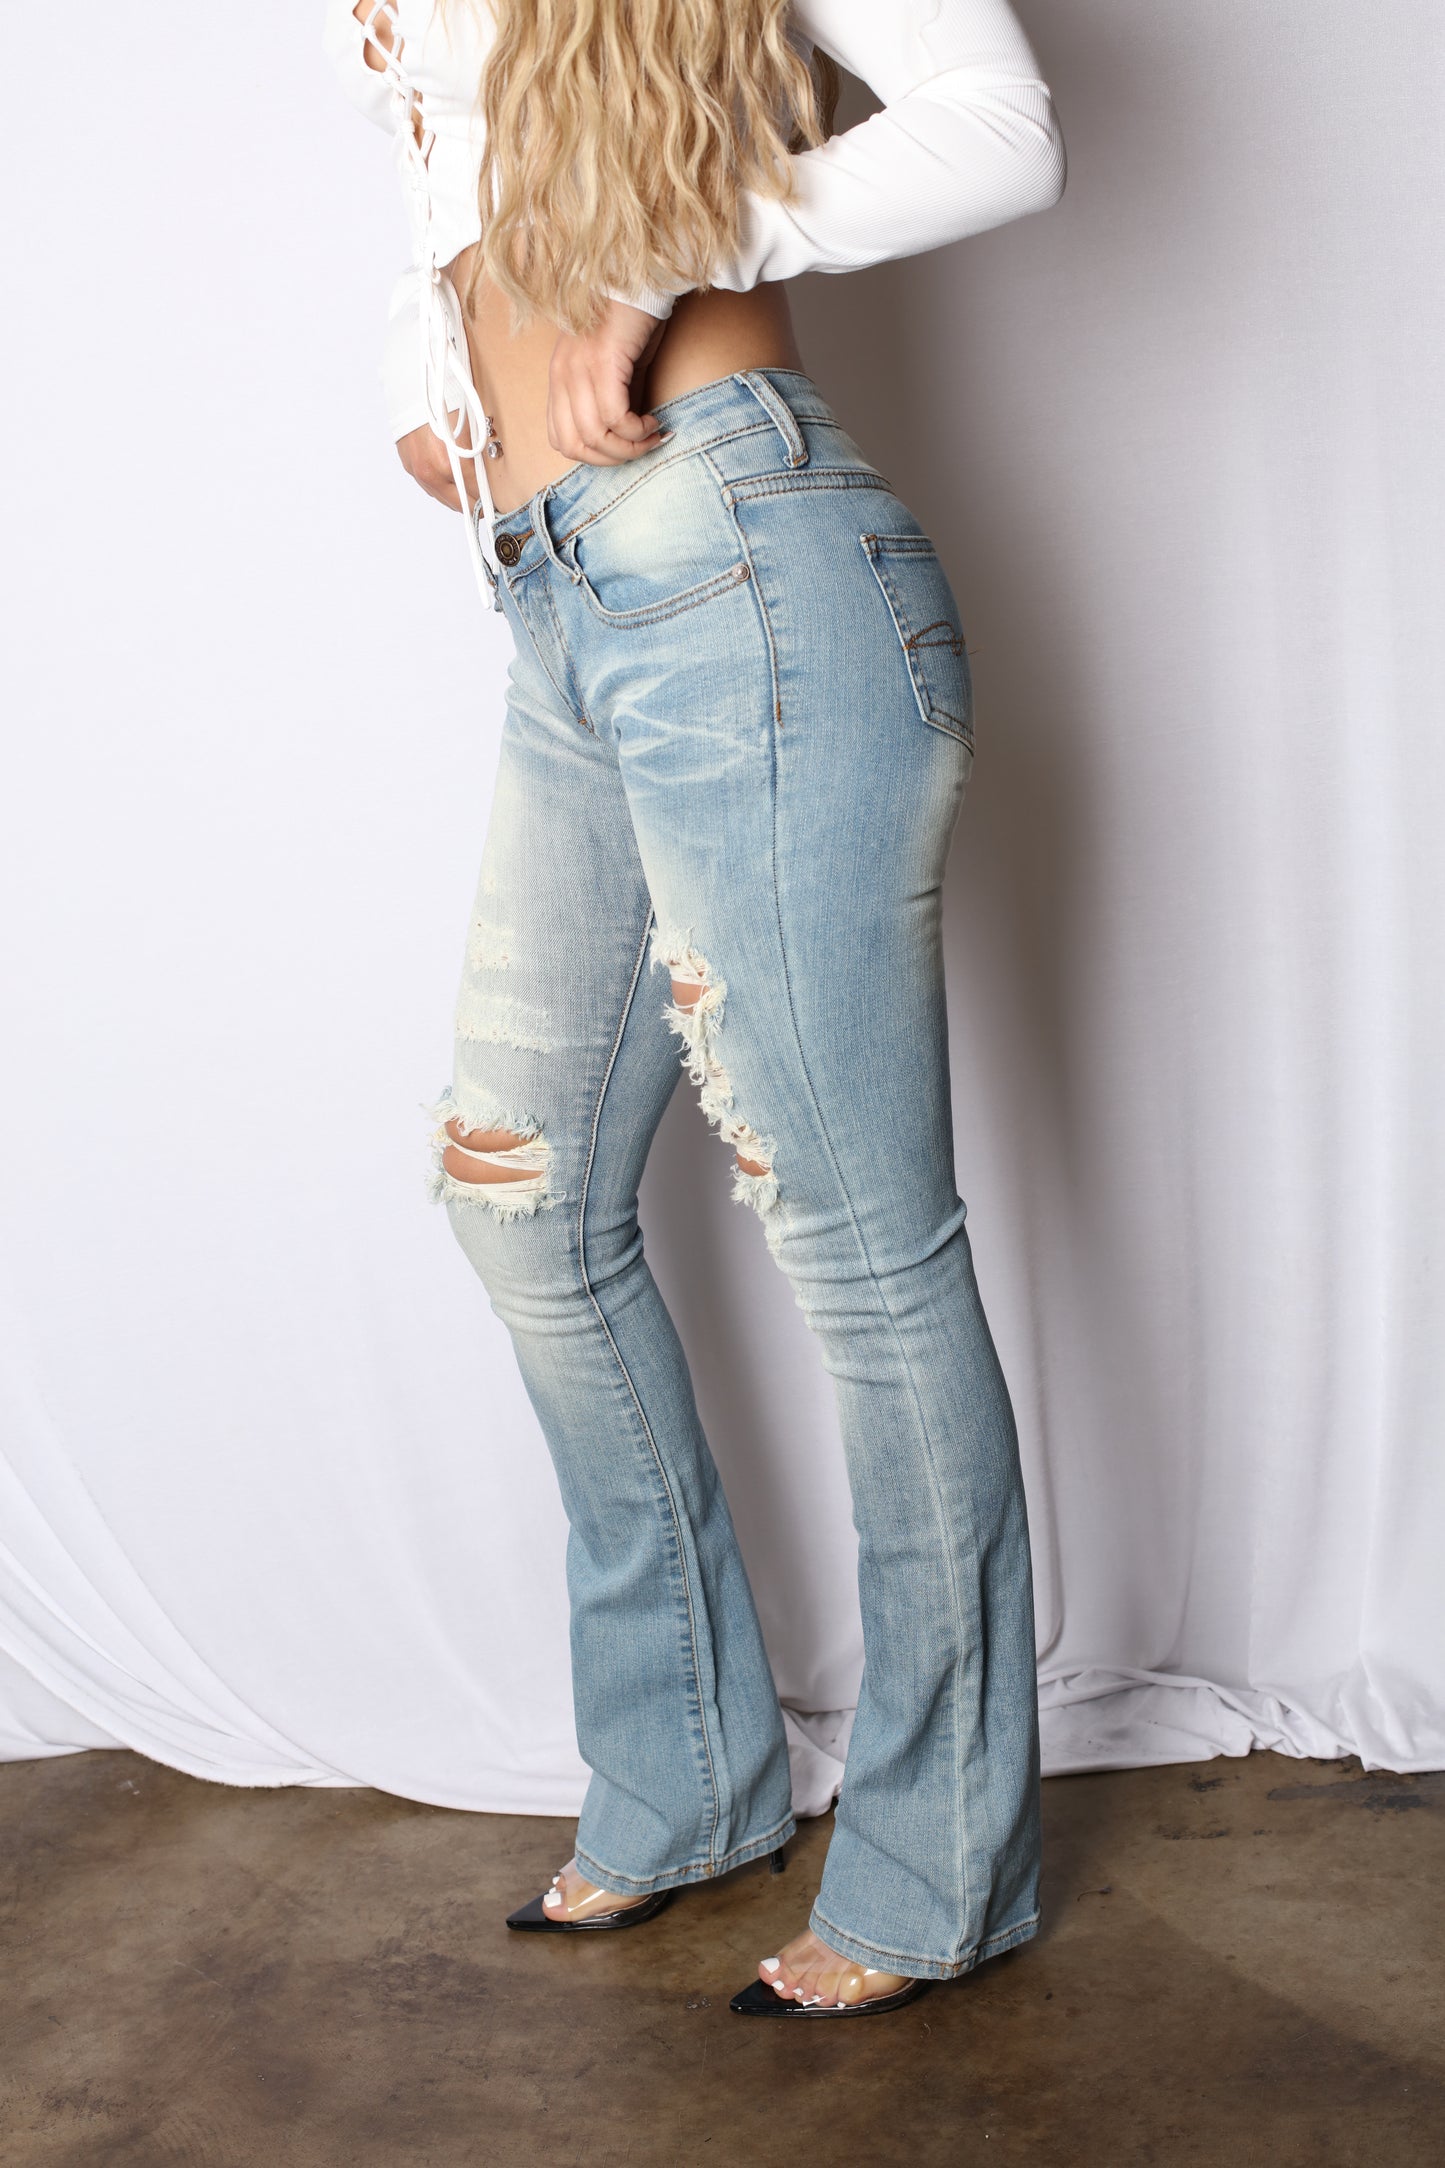 Paris Hilton Light 2000 Low Rise Boot Cut Jeans